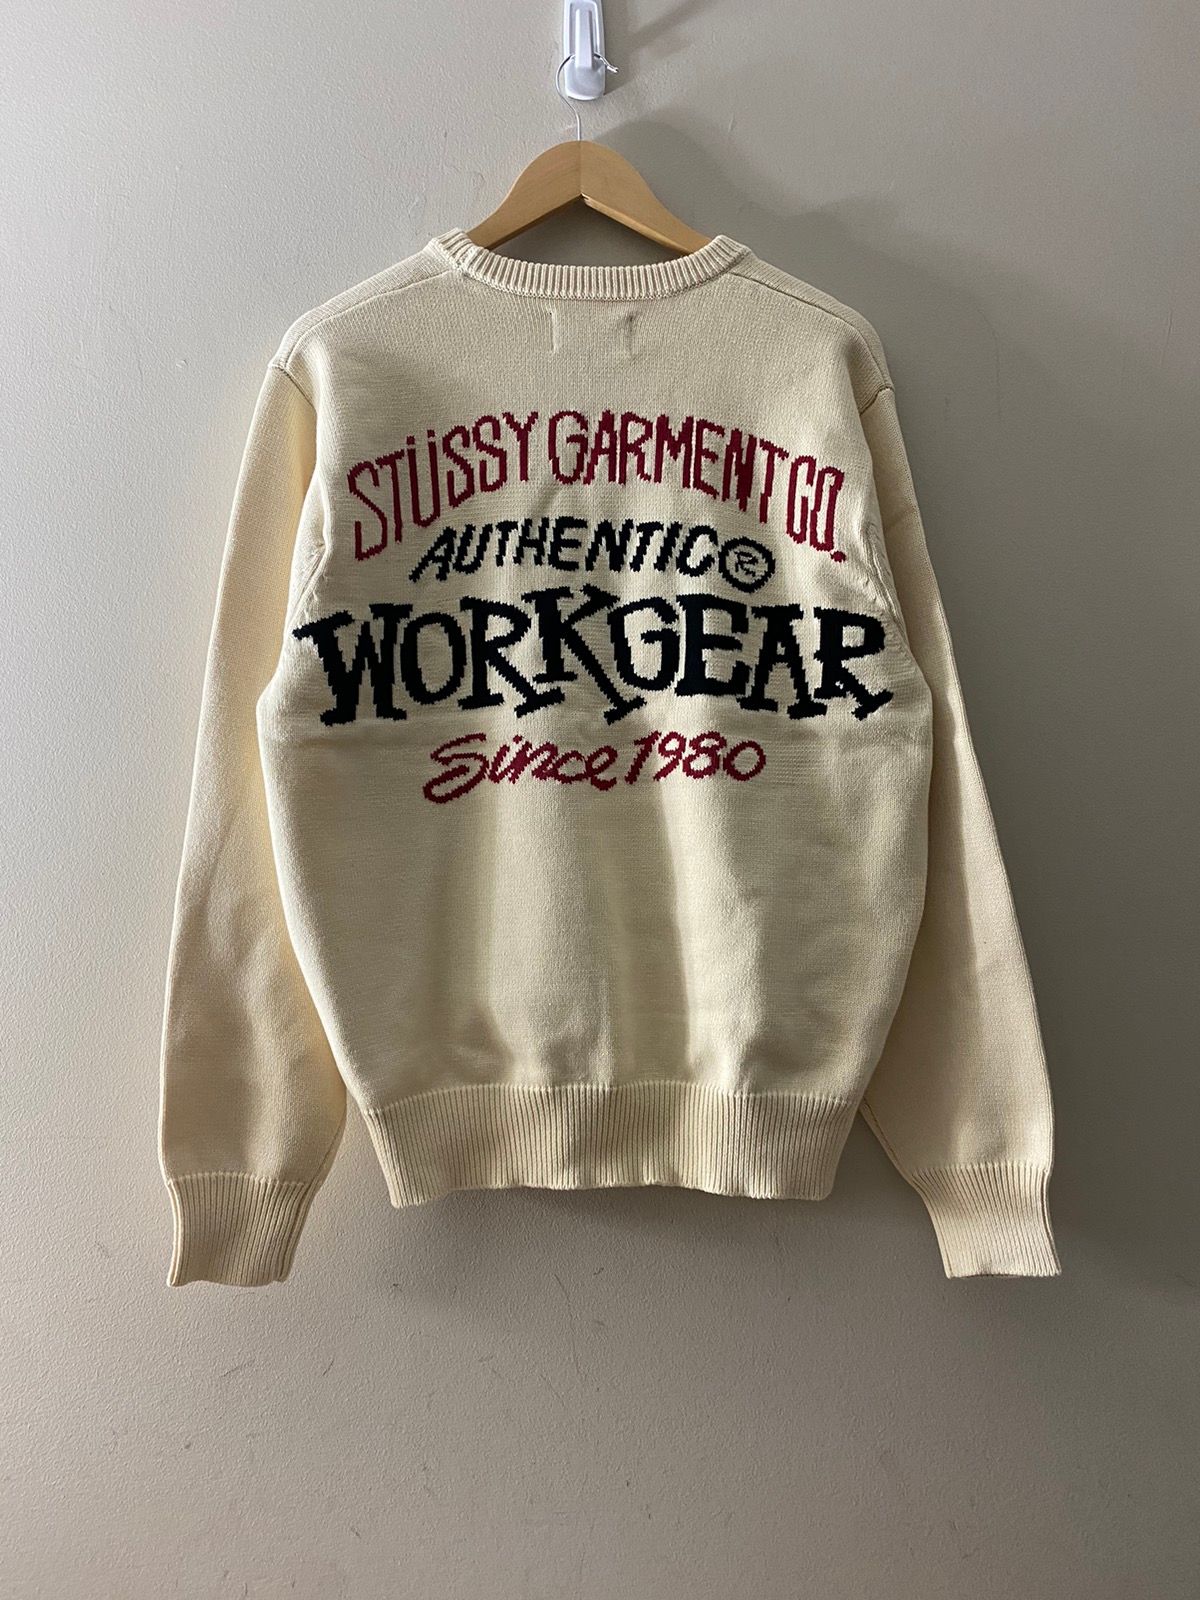 Stussy Workgear Sweater | Grailed